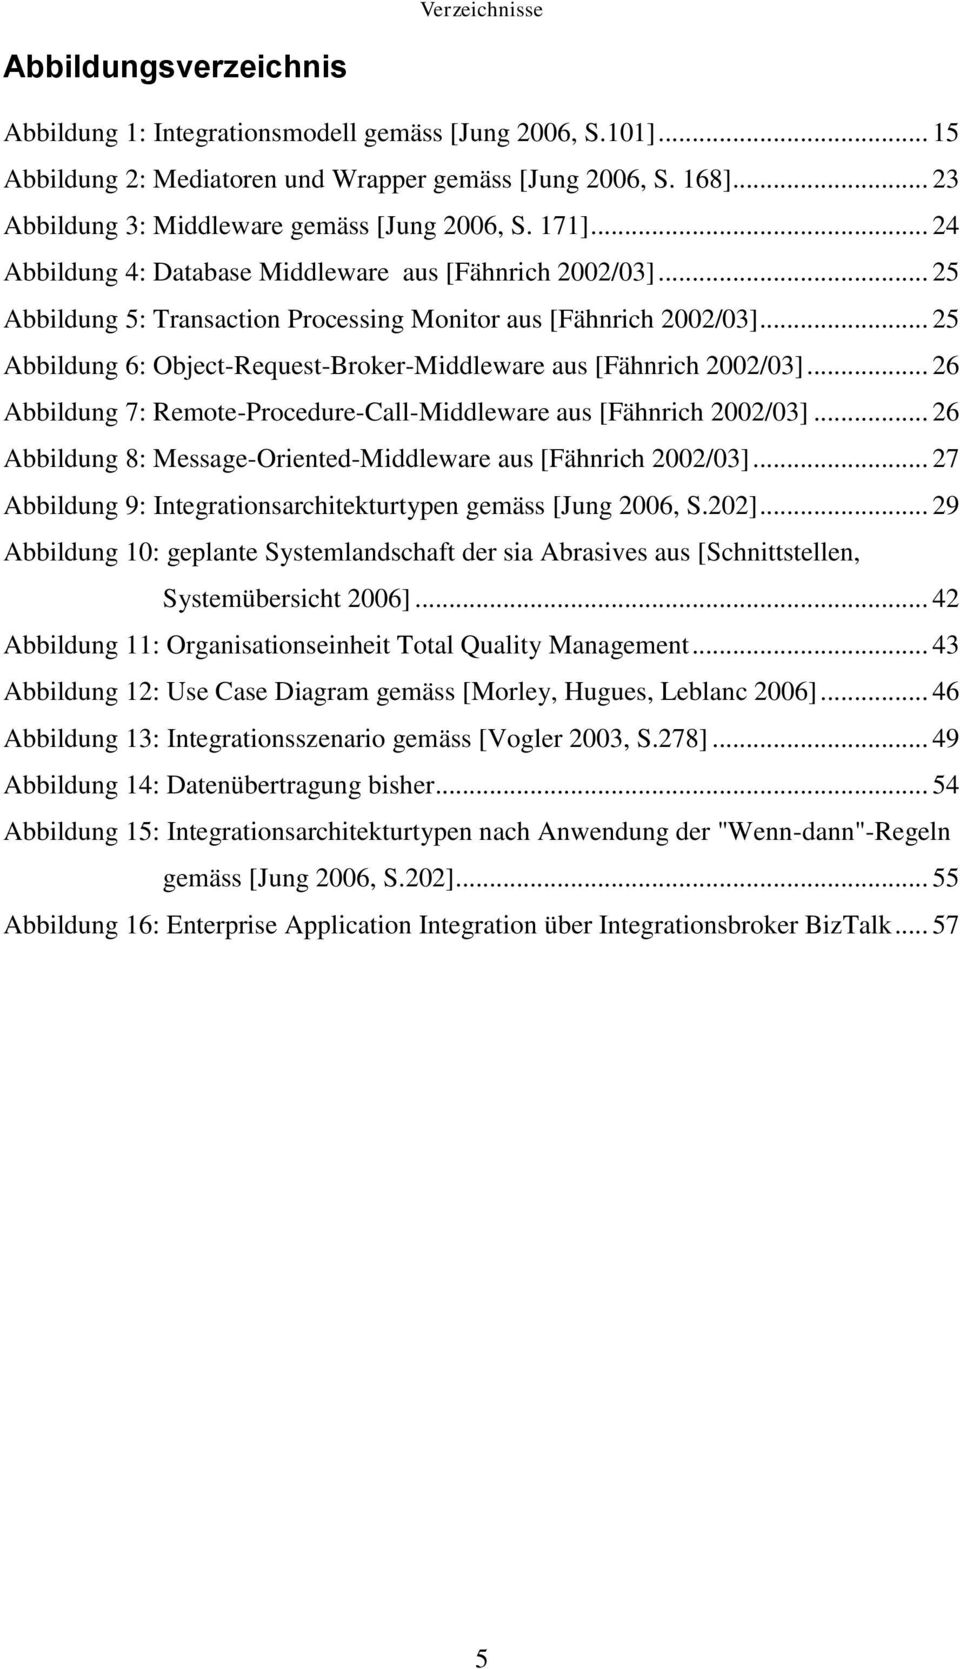 .. 25 Abbildung 6: Object-Request-Broker-Middleware aus [Fähnrich 2002/03]... 26 Abbildung 7: Remote-Procedure-Call-Middleware aus [Fähnrich 2002/03].